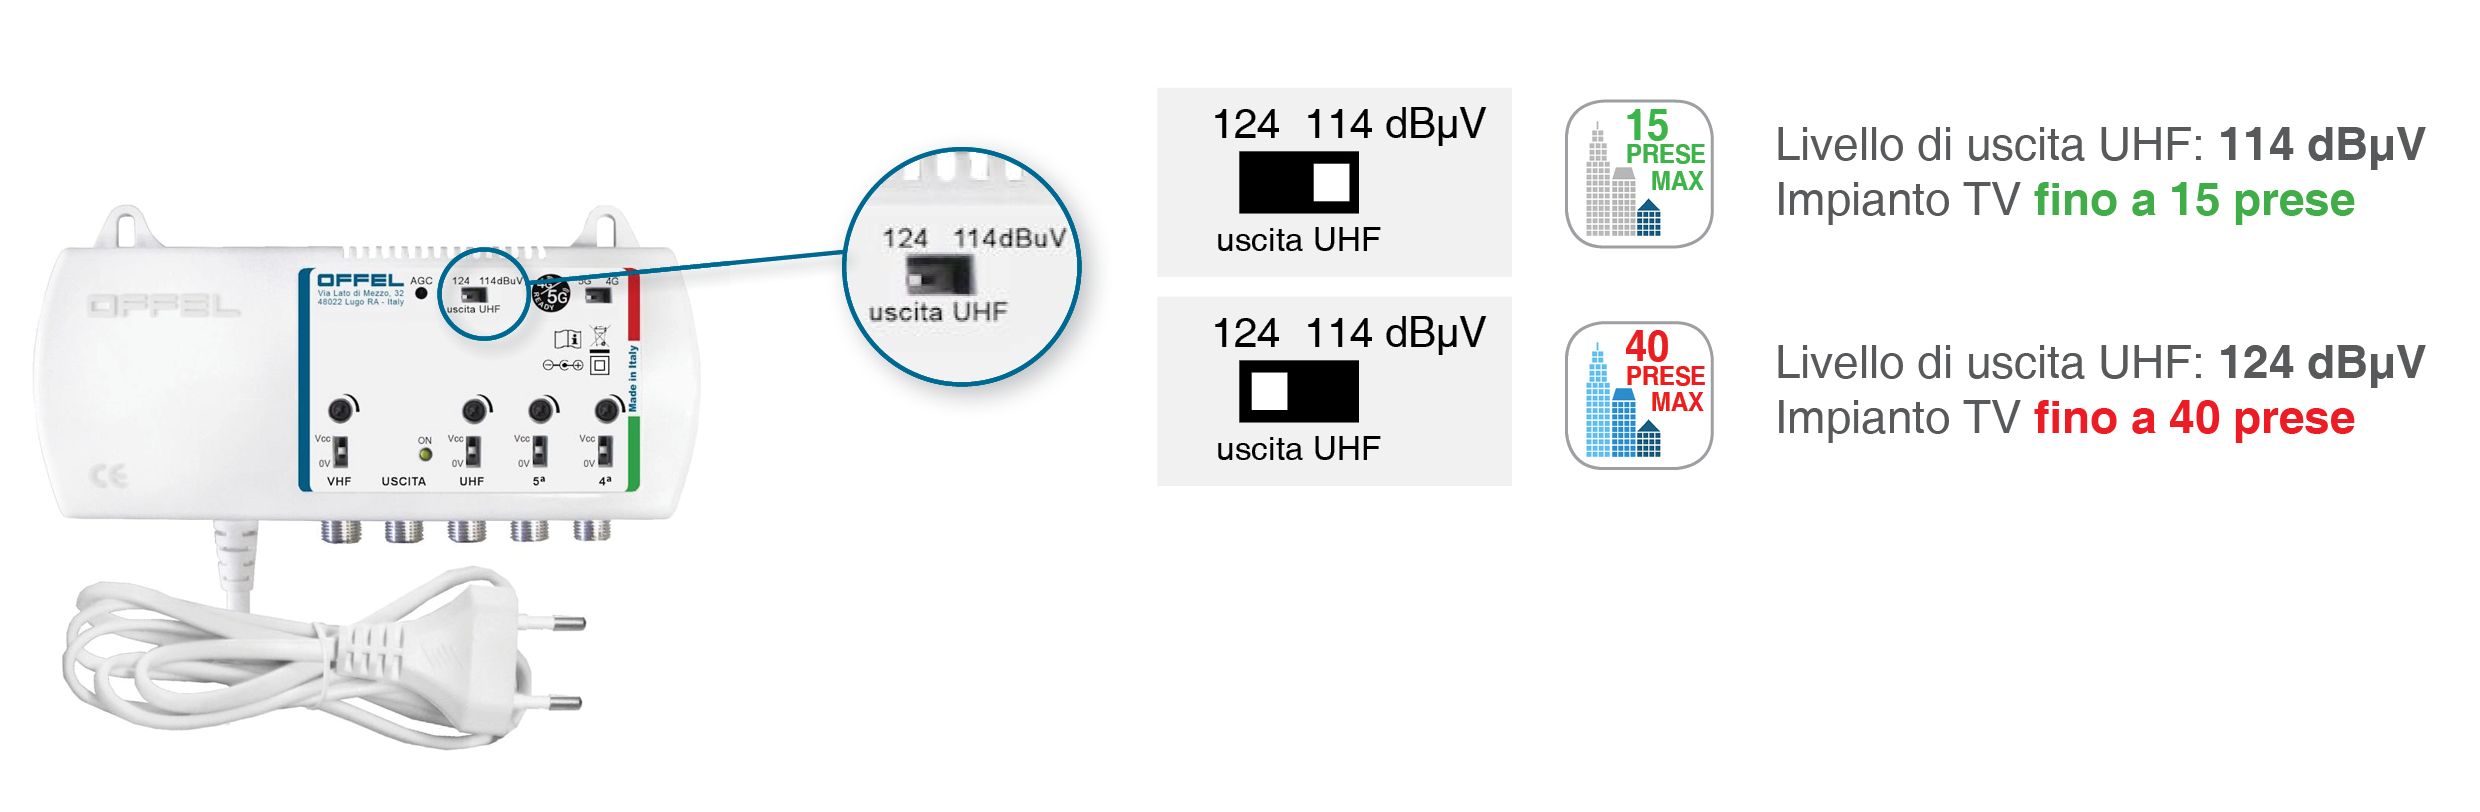 Selettore a due step per l'impostazione del livello massimo di uscita in banda UHF (114 o 124 dBuV)